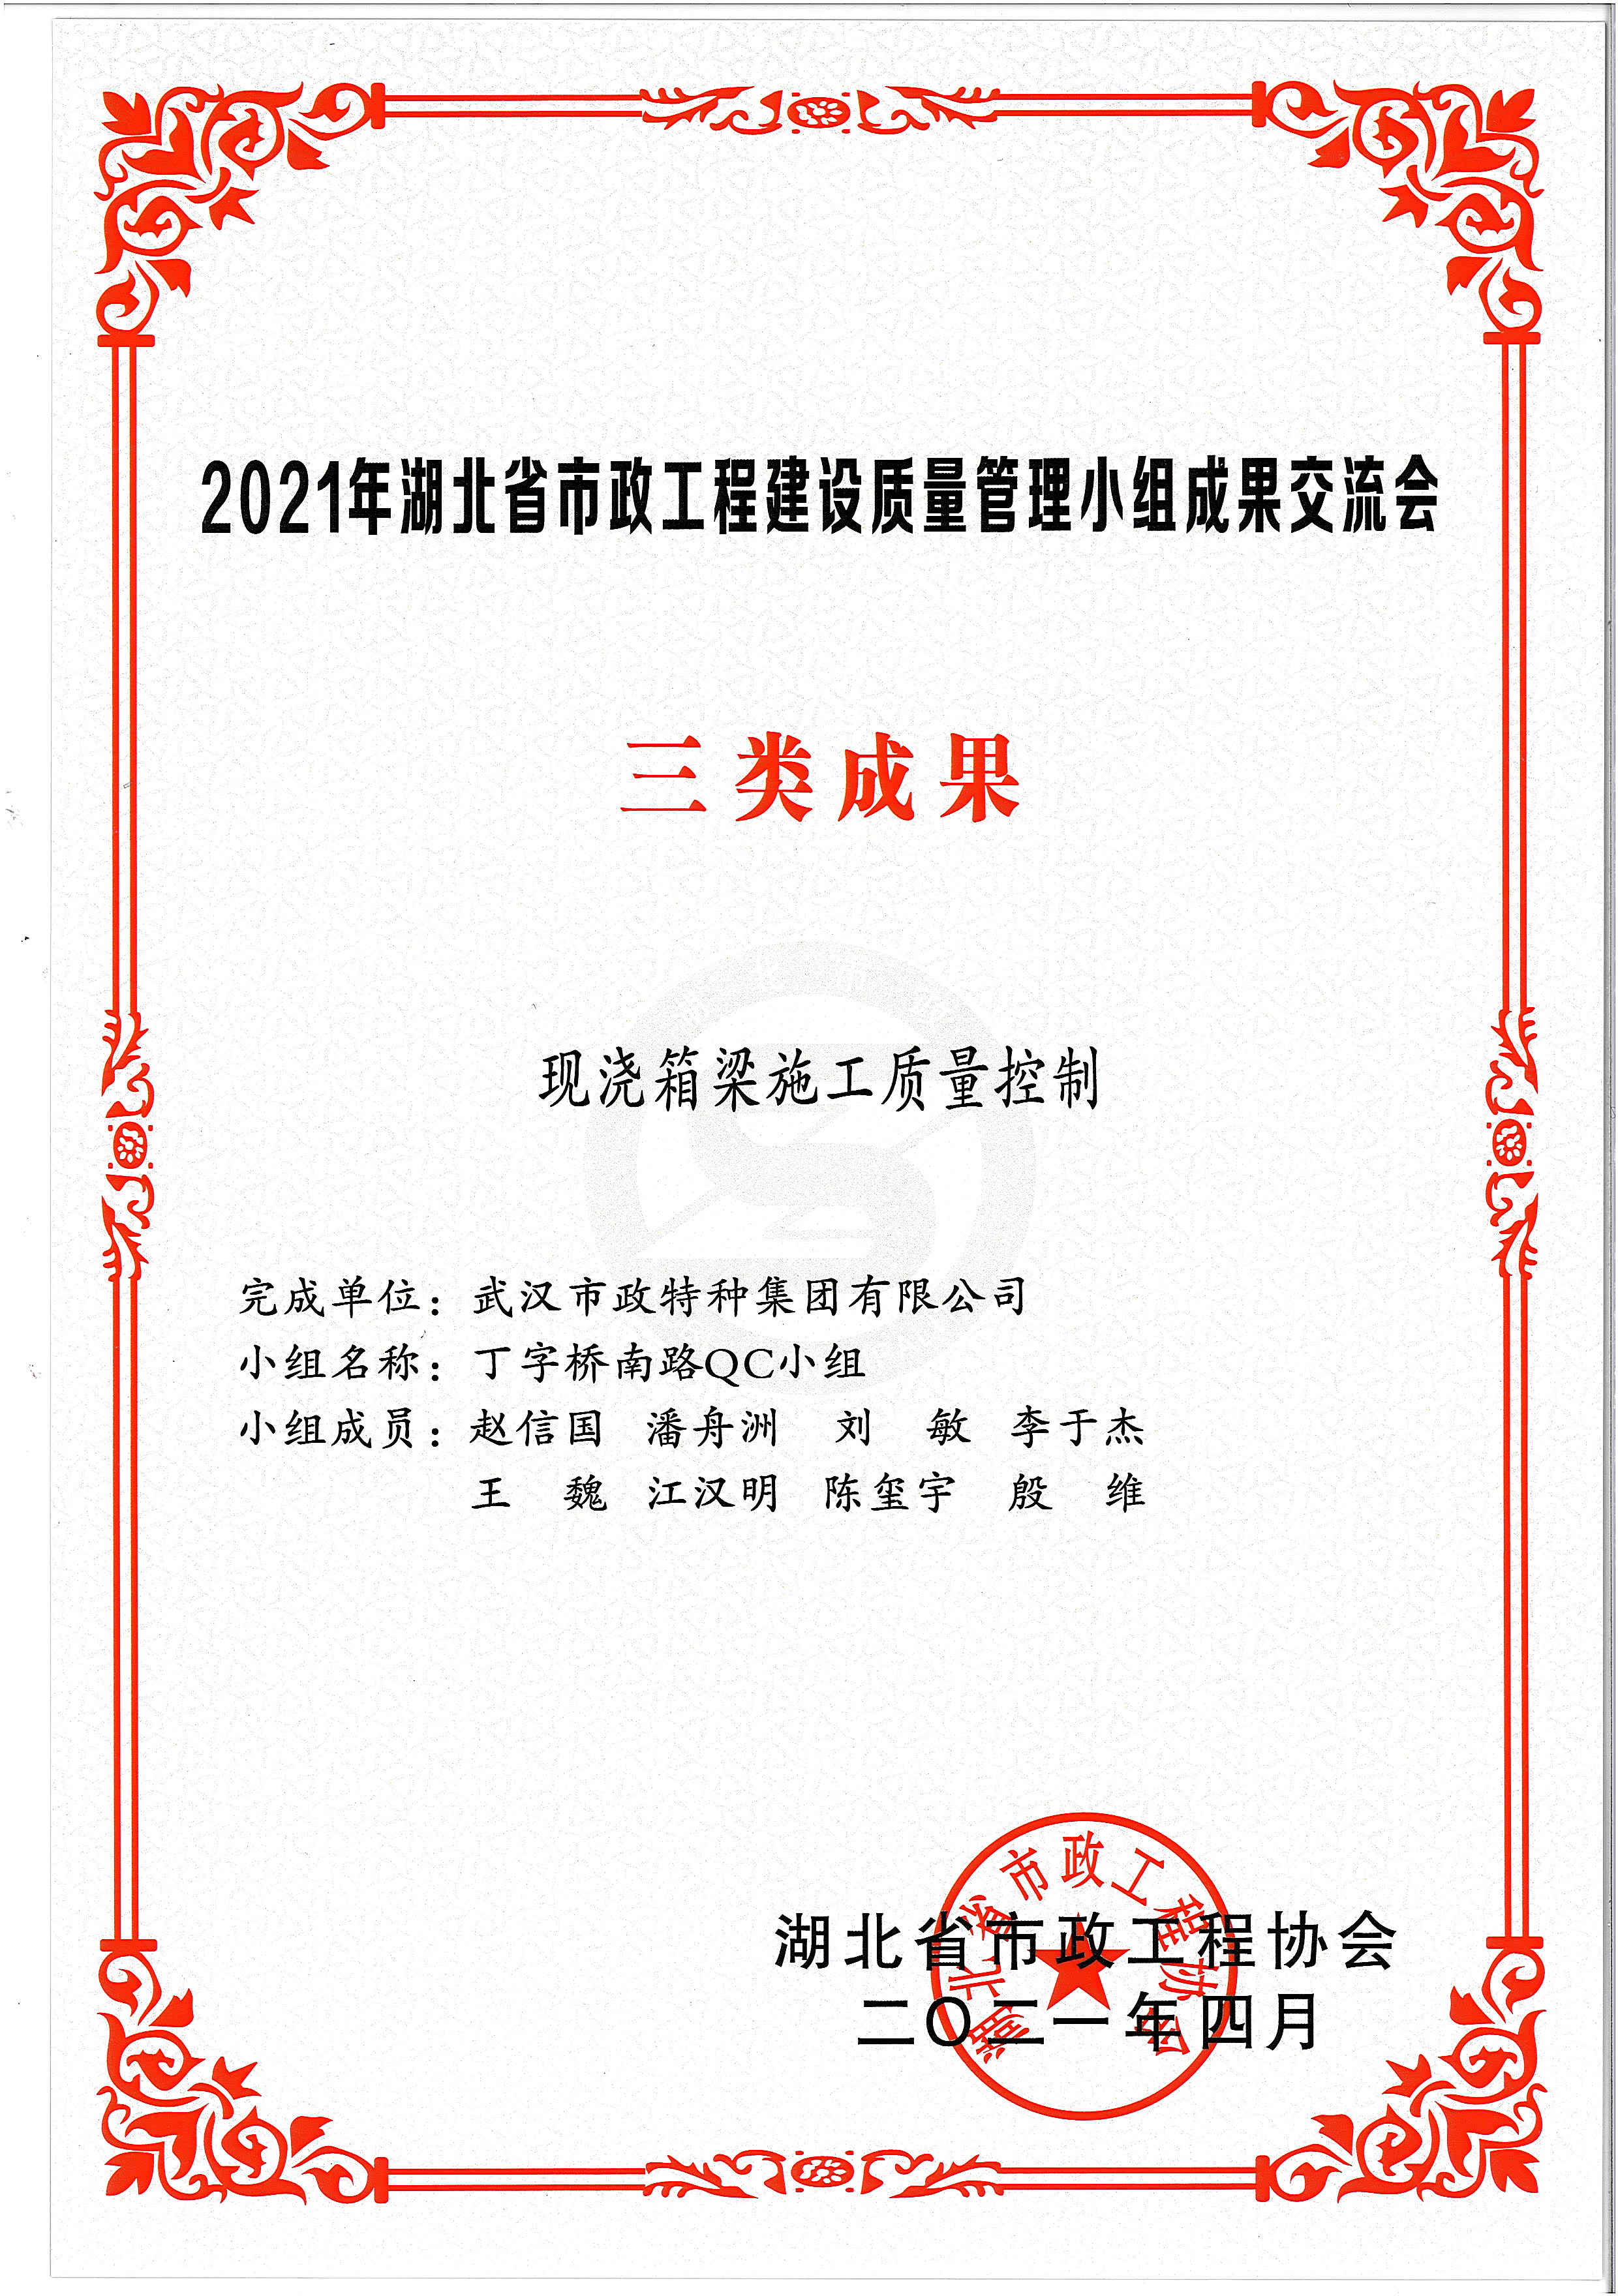 湖北省市政协会QC成果奖——现浇箱梁施工质量控制